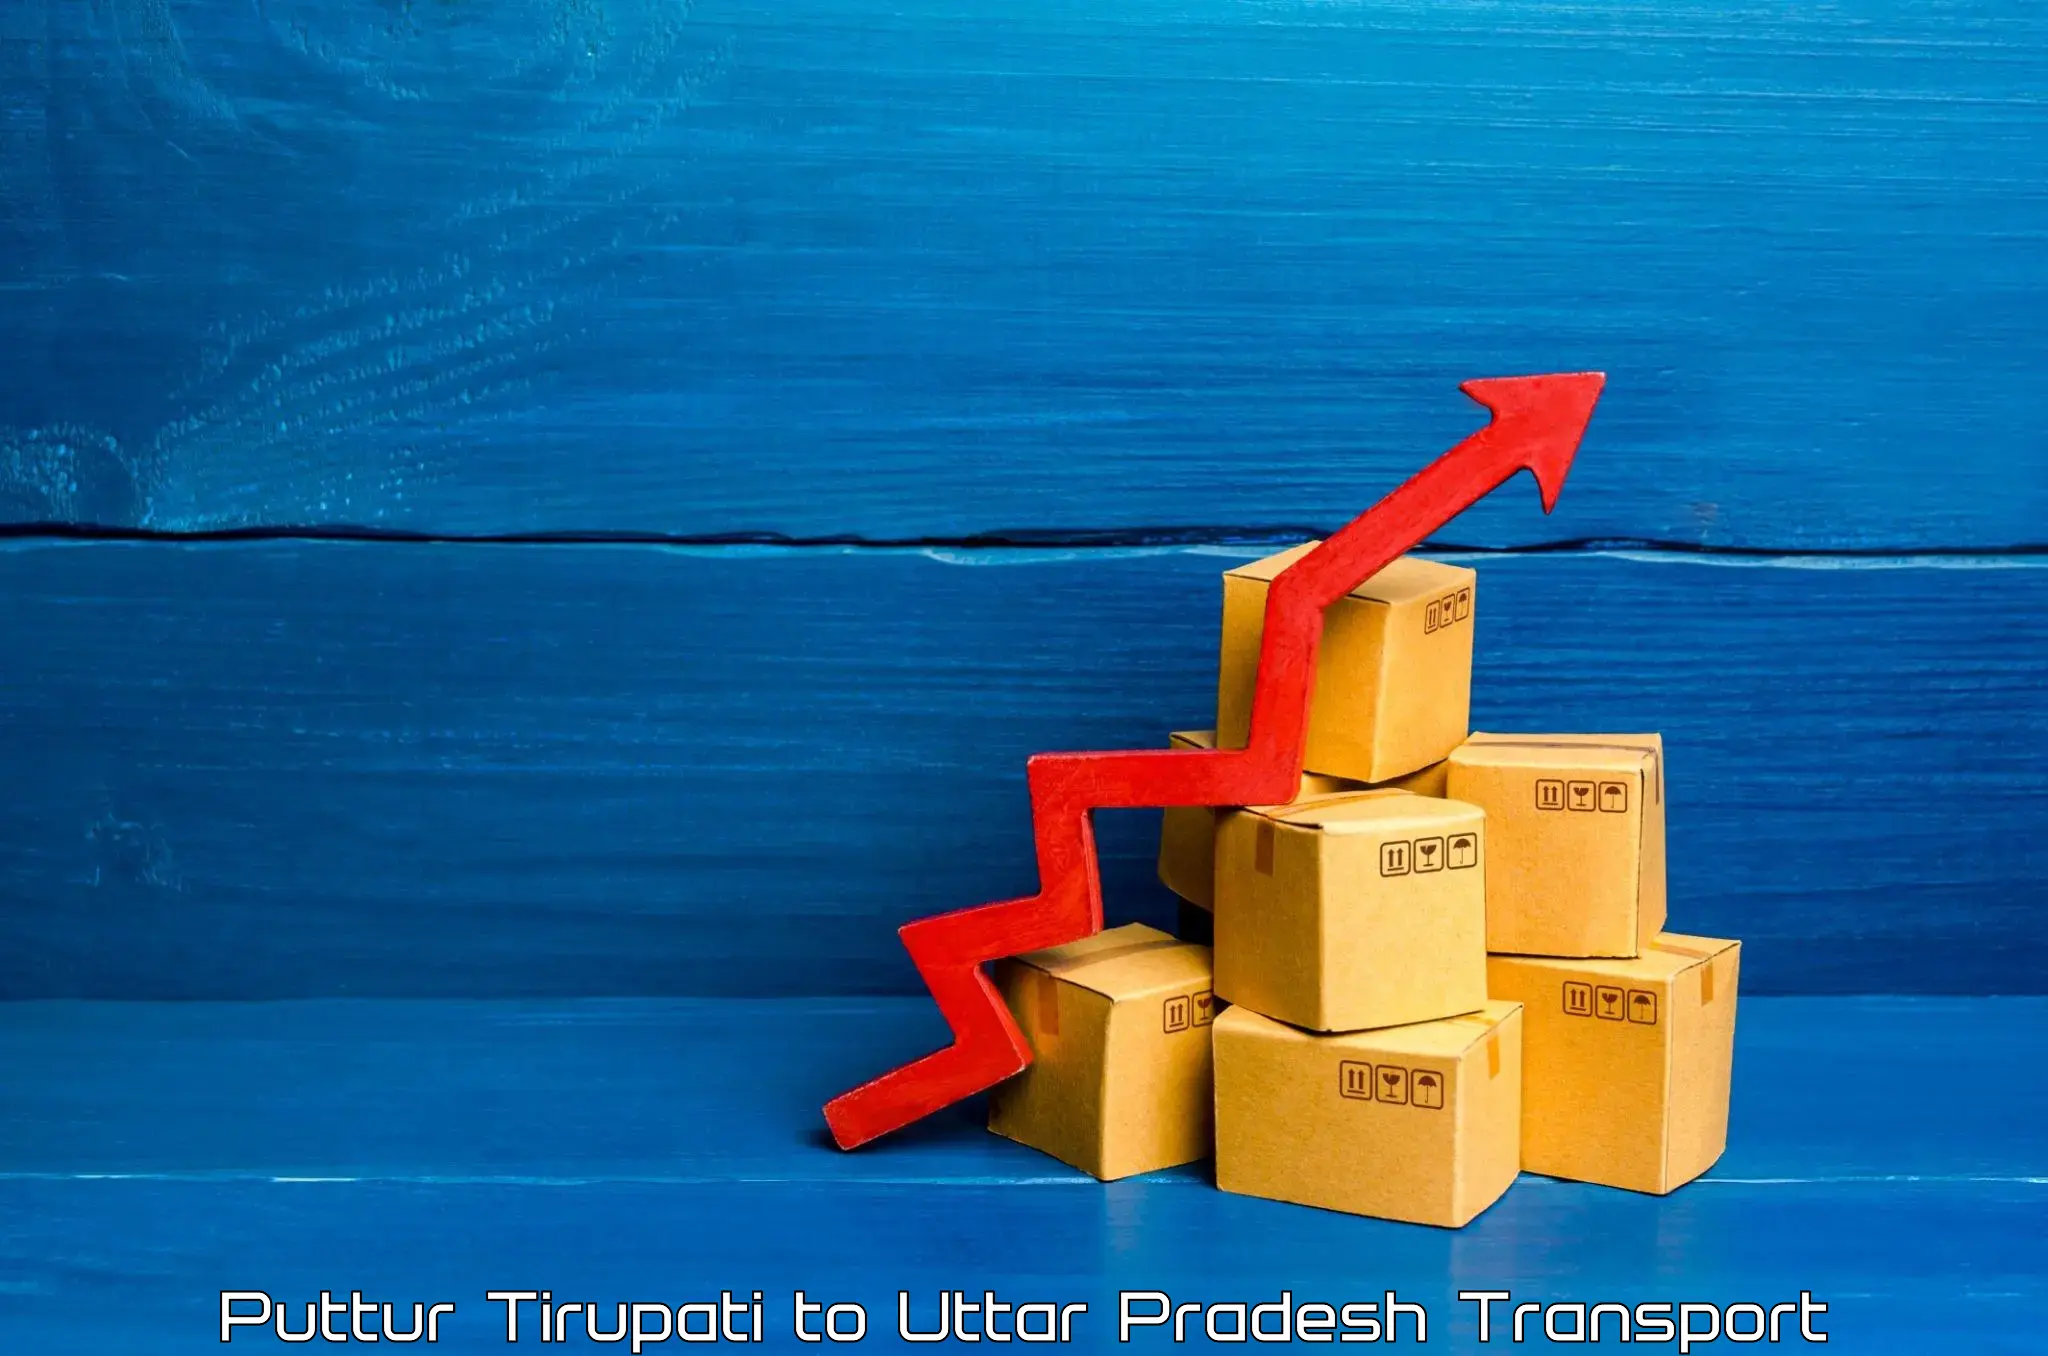 Furniture transport service Puttur Tirupati to Bahraich